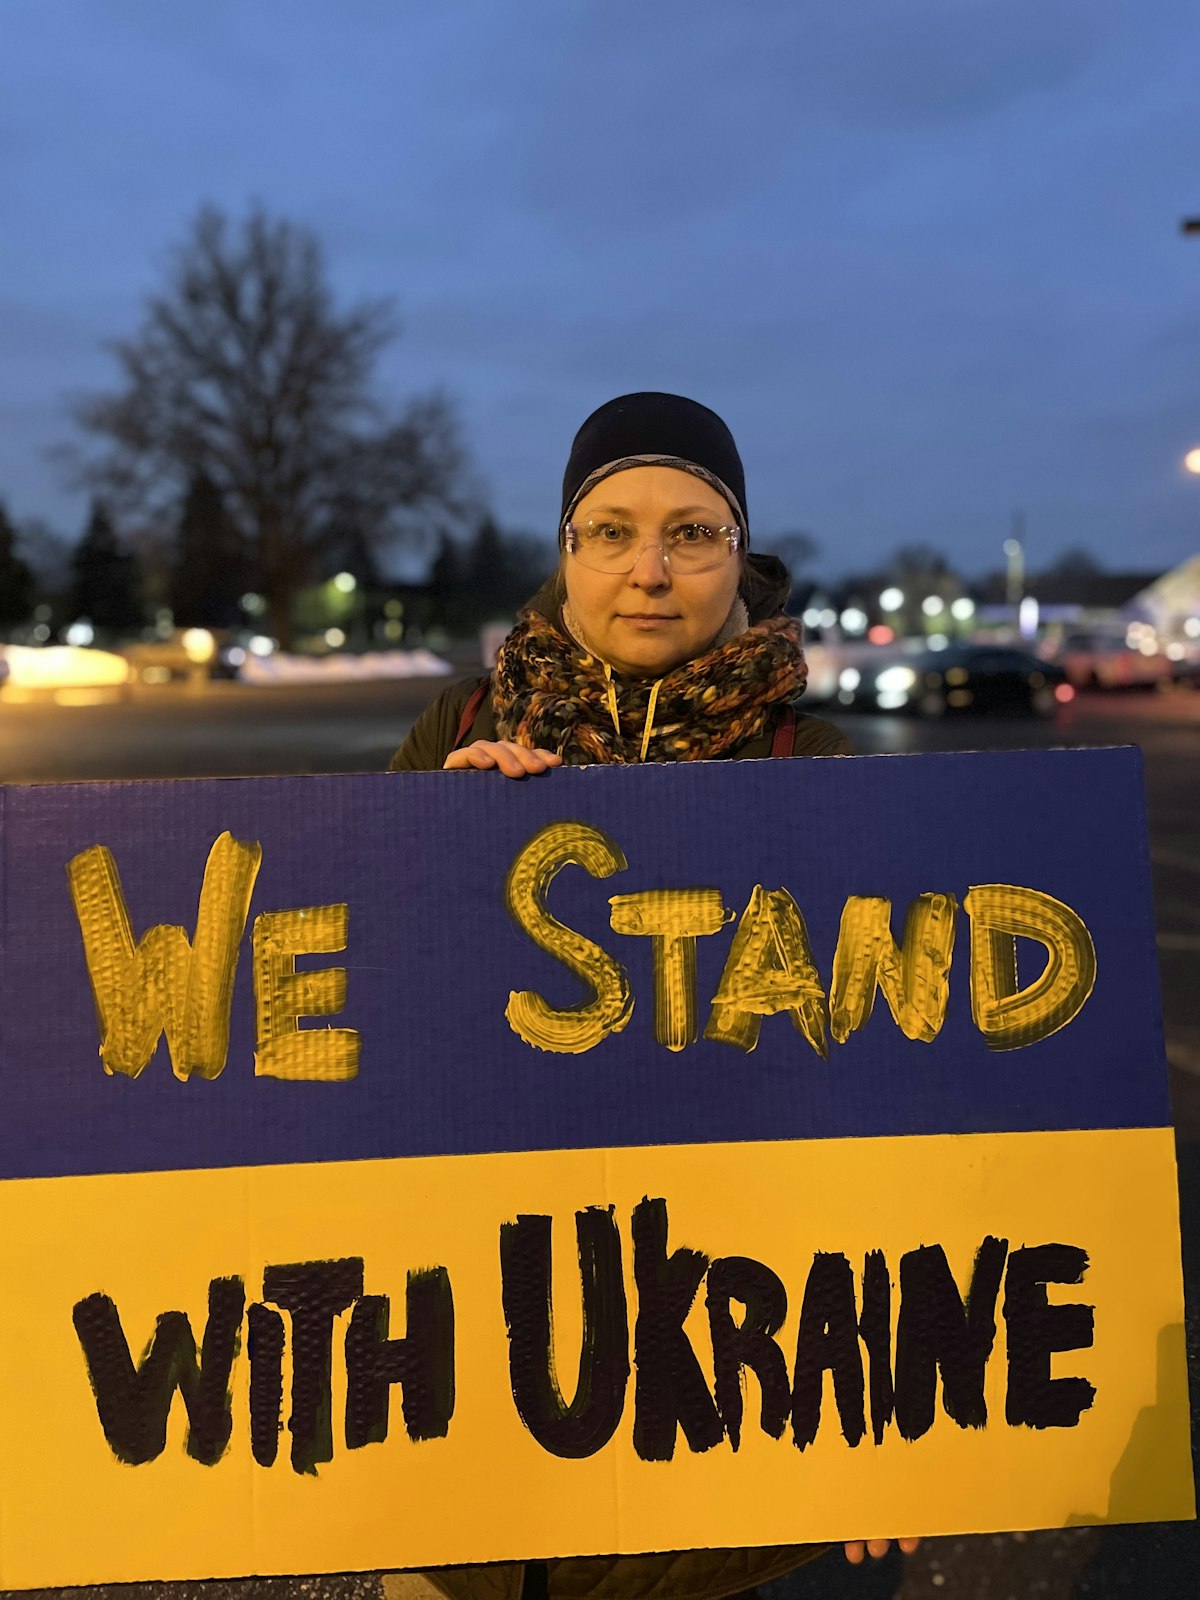 La ciudadana rusa Olga Grushko apoyó a los ucranianos en la manifestación. Quiere que los ucranianos sepan que muchos rusos están en contra de la invasión, pero muchos no pueden hablar sin miedo a las represalias en Rusia. (Gabriella Patti | Detroit Catholic)